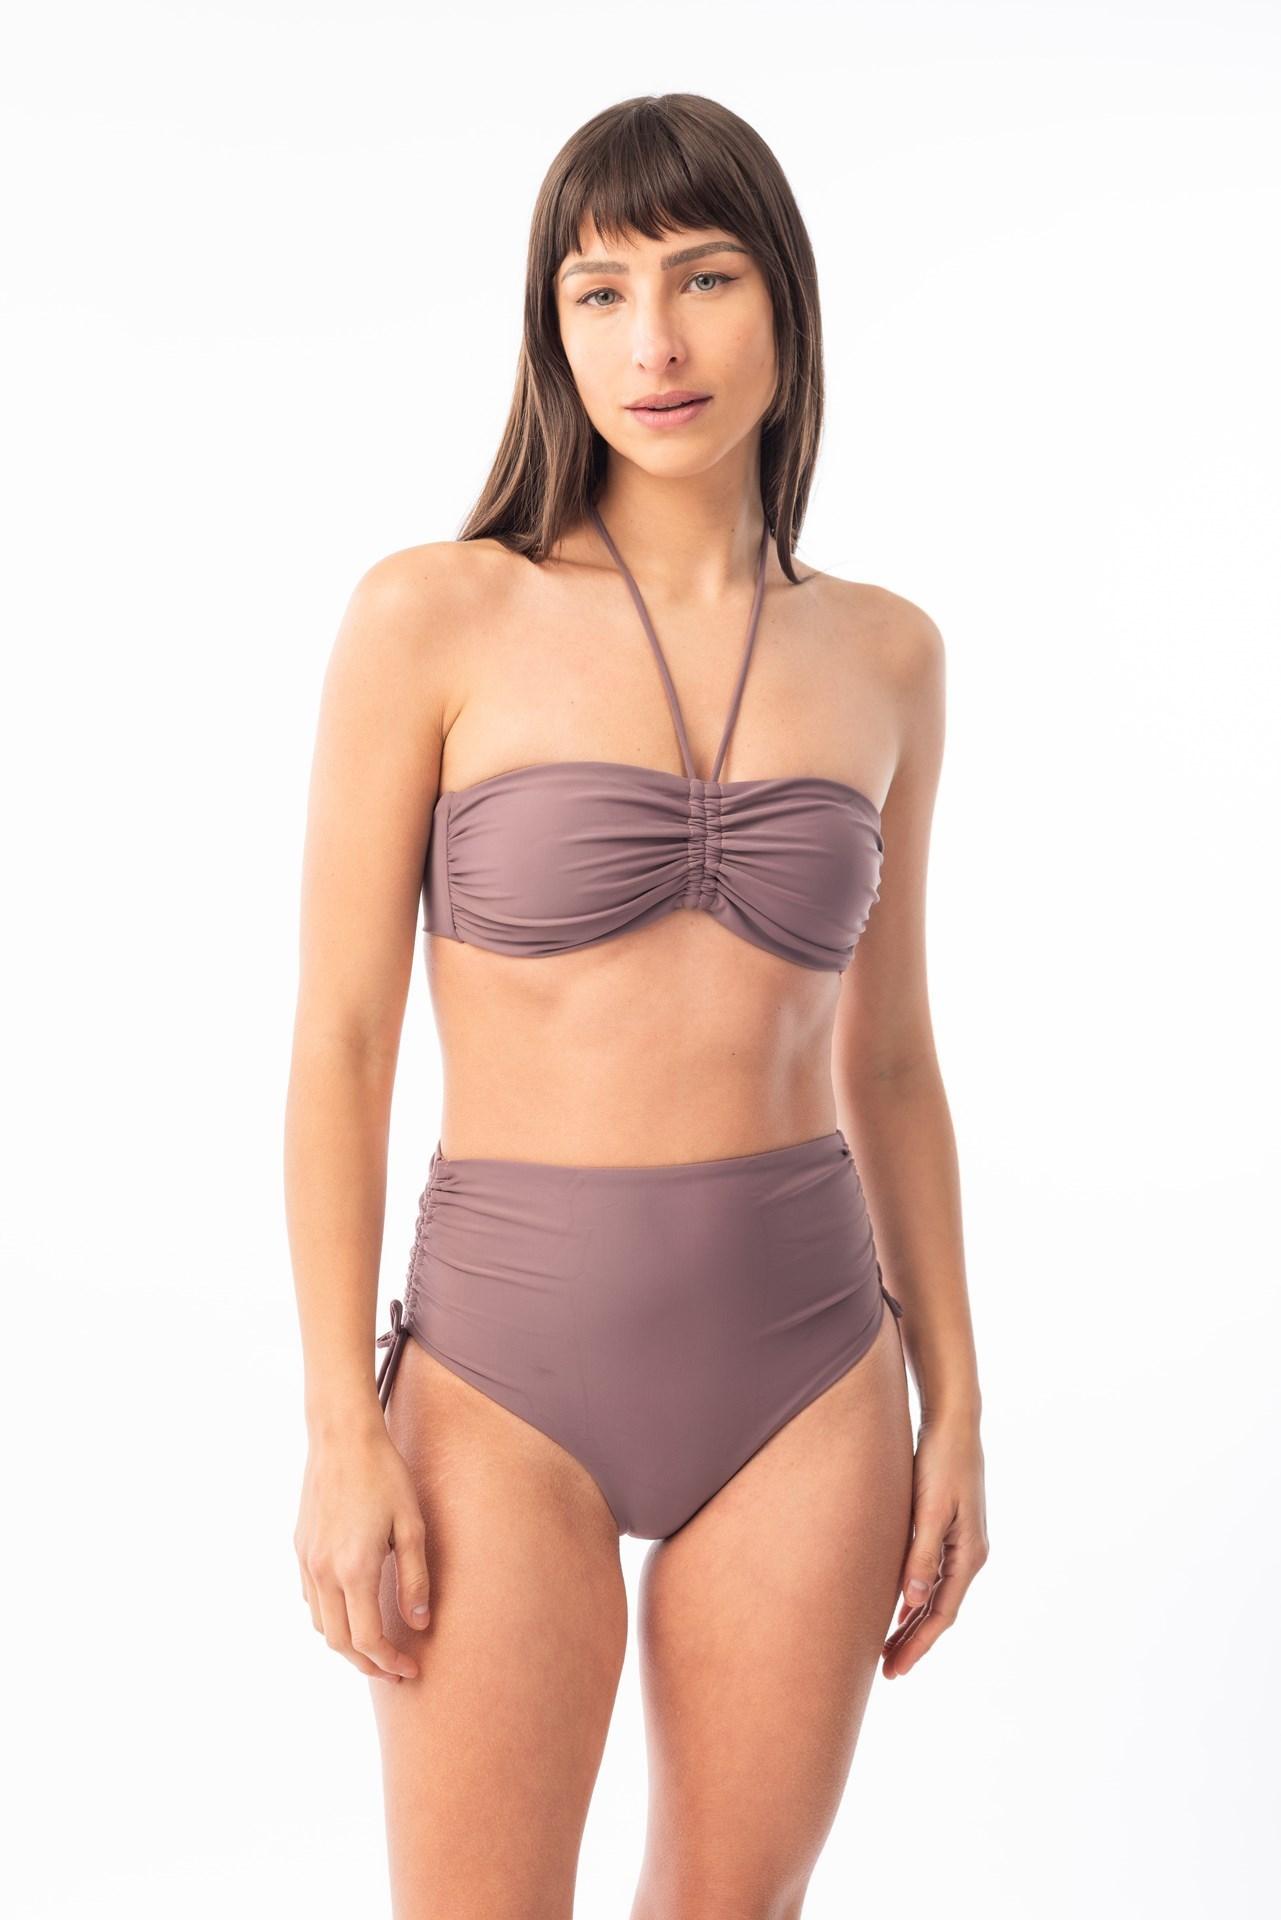 Londres- Bikini Tiro Alto con Jaretas violeta m